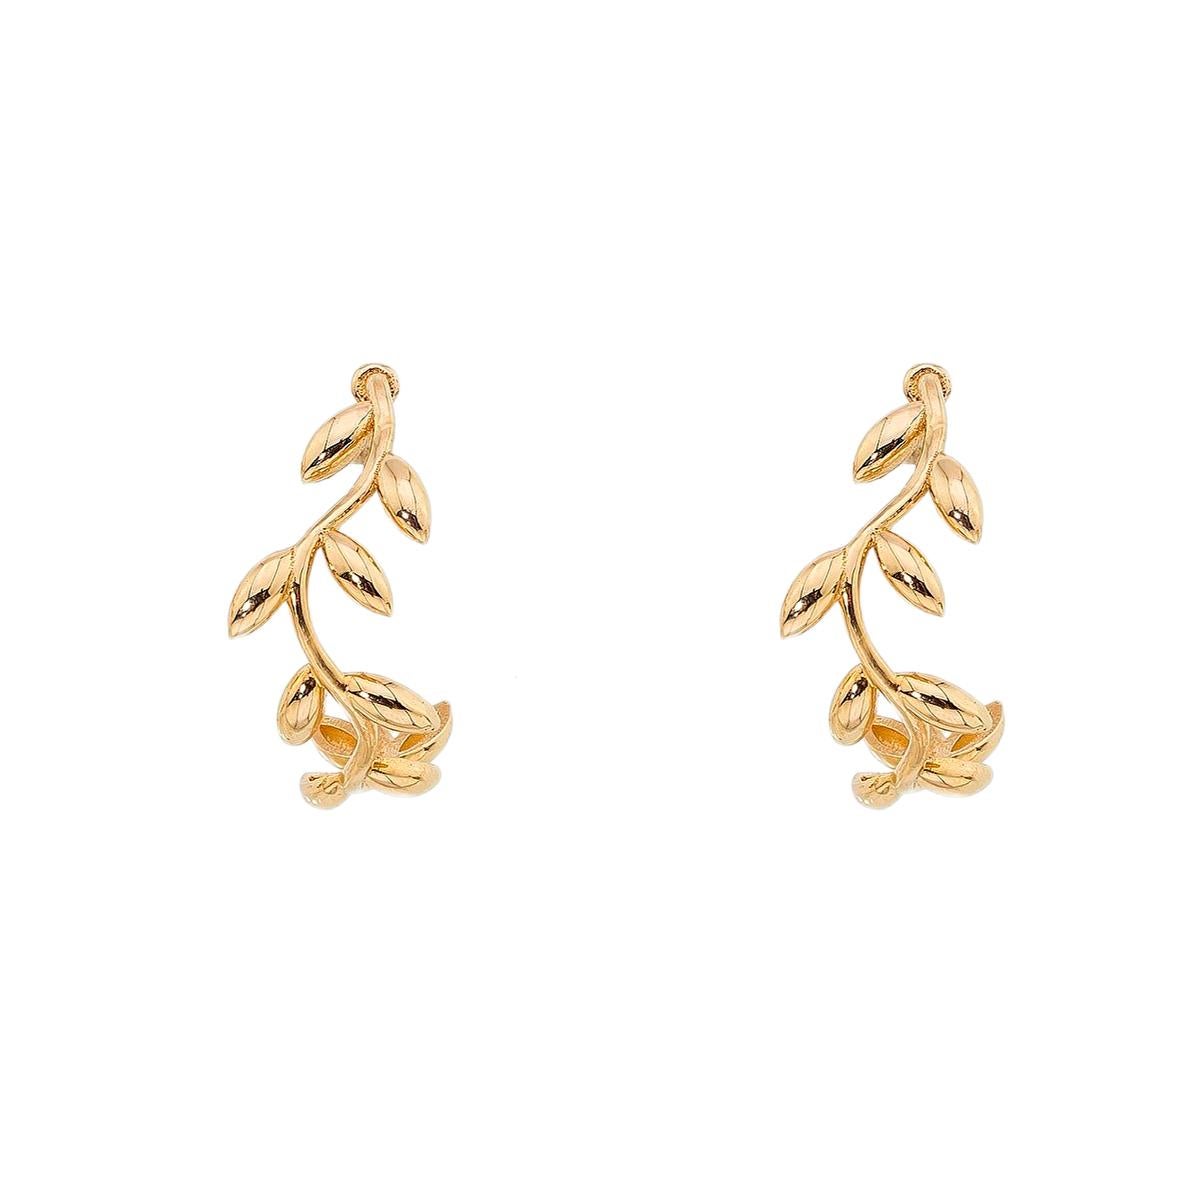 Modern 14k Gold Leaves Hoop Earrings, Olive Leaf Stud Earrings. For Sale